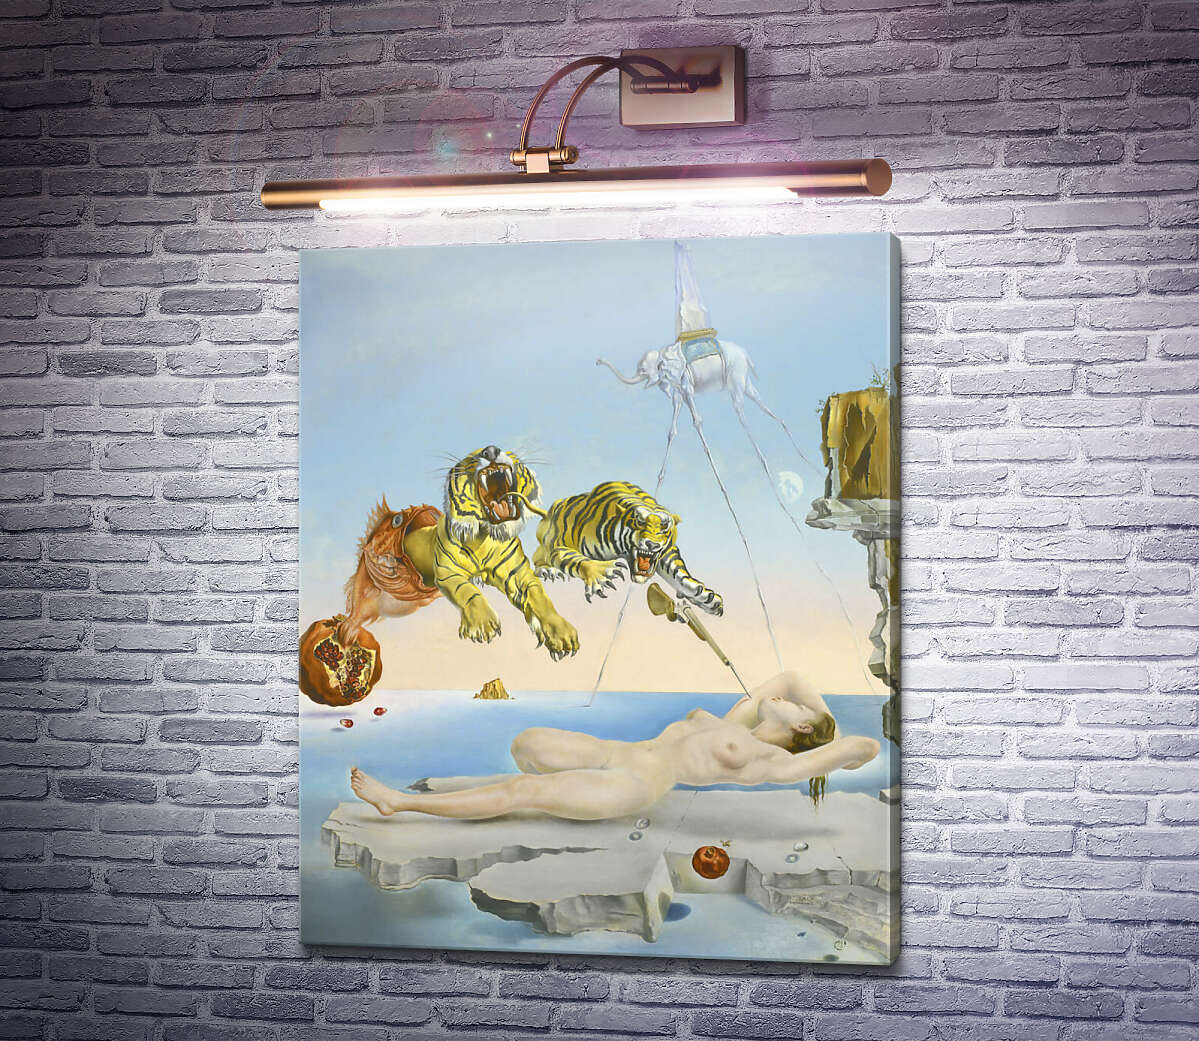 Картина Сон, викликаний польотом бджоли навколо граната за секунду до пробудження Сальвадор Далі